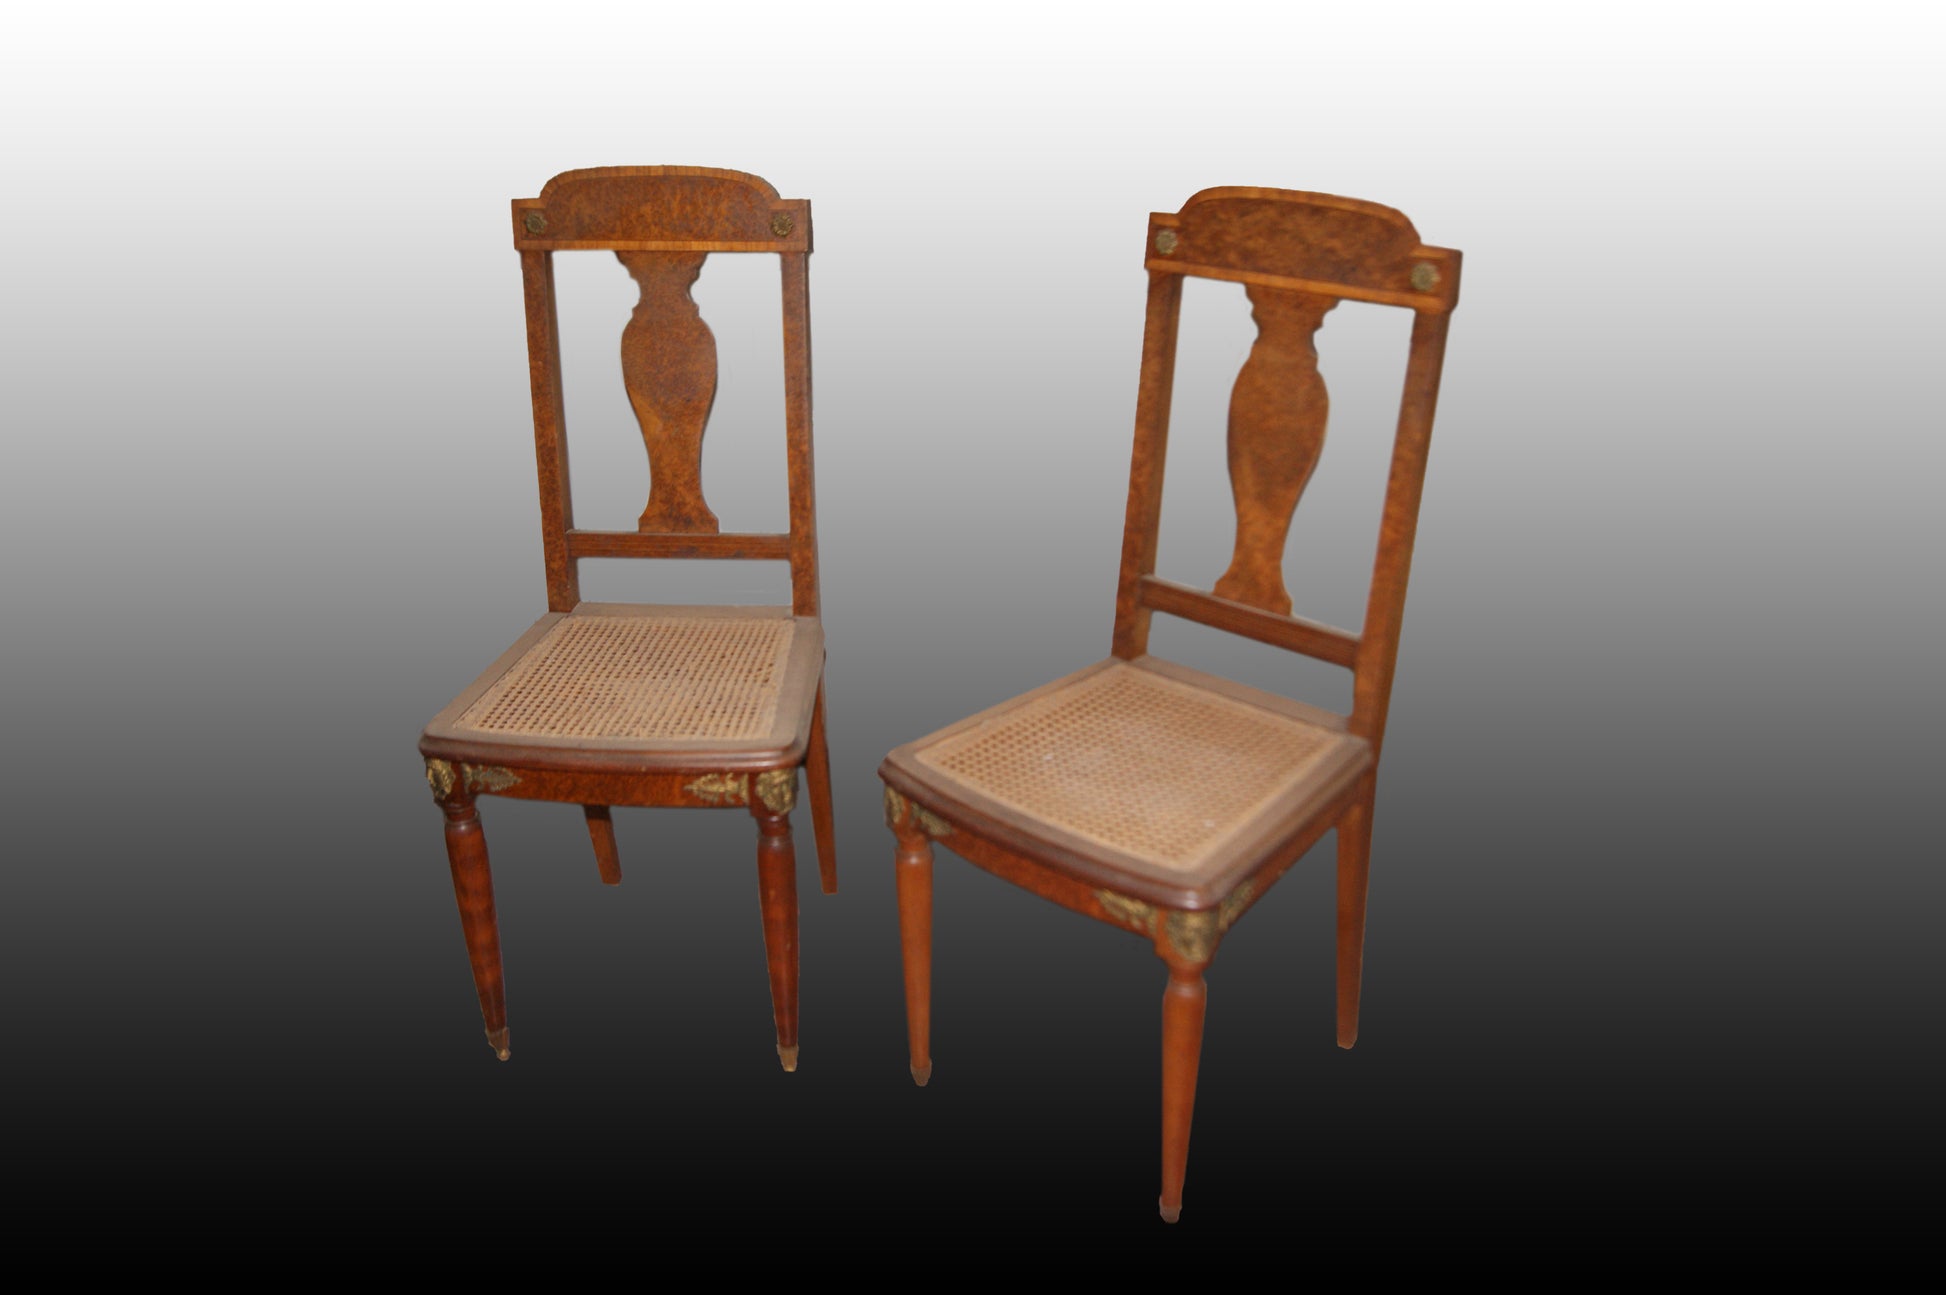 Gruppo si 6 sedie francesi stile Impero del 1800 con ricchi bronzi e radica